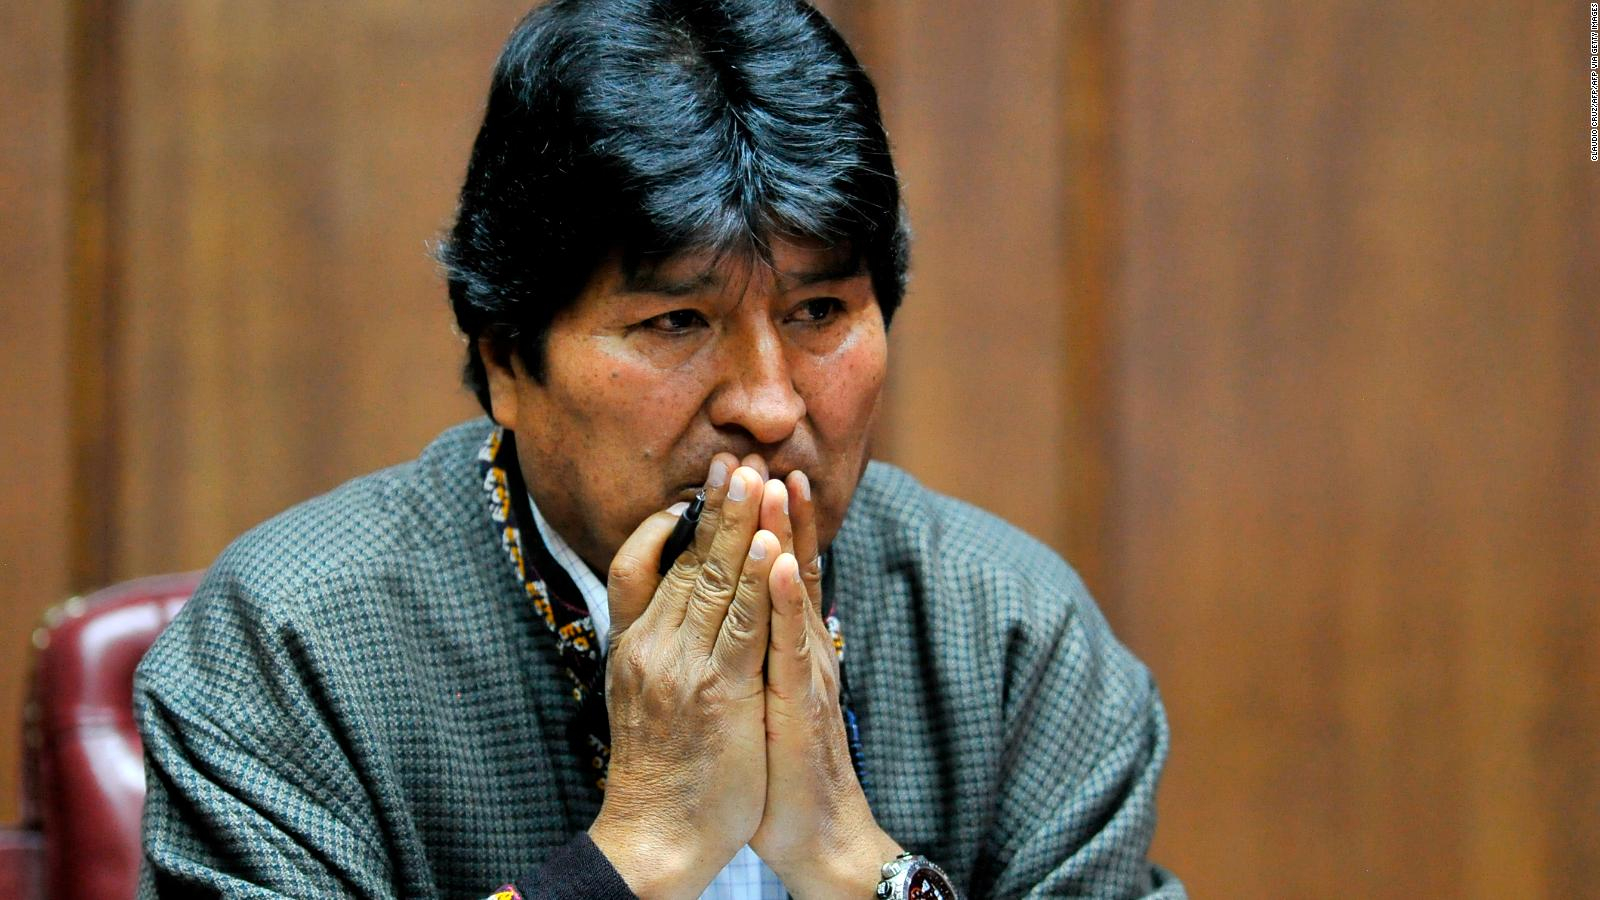 Fortuna de Evo Morales: TODO el dinero que ha acumulado